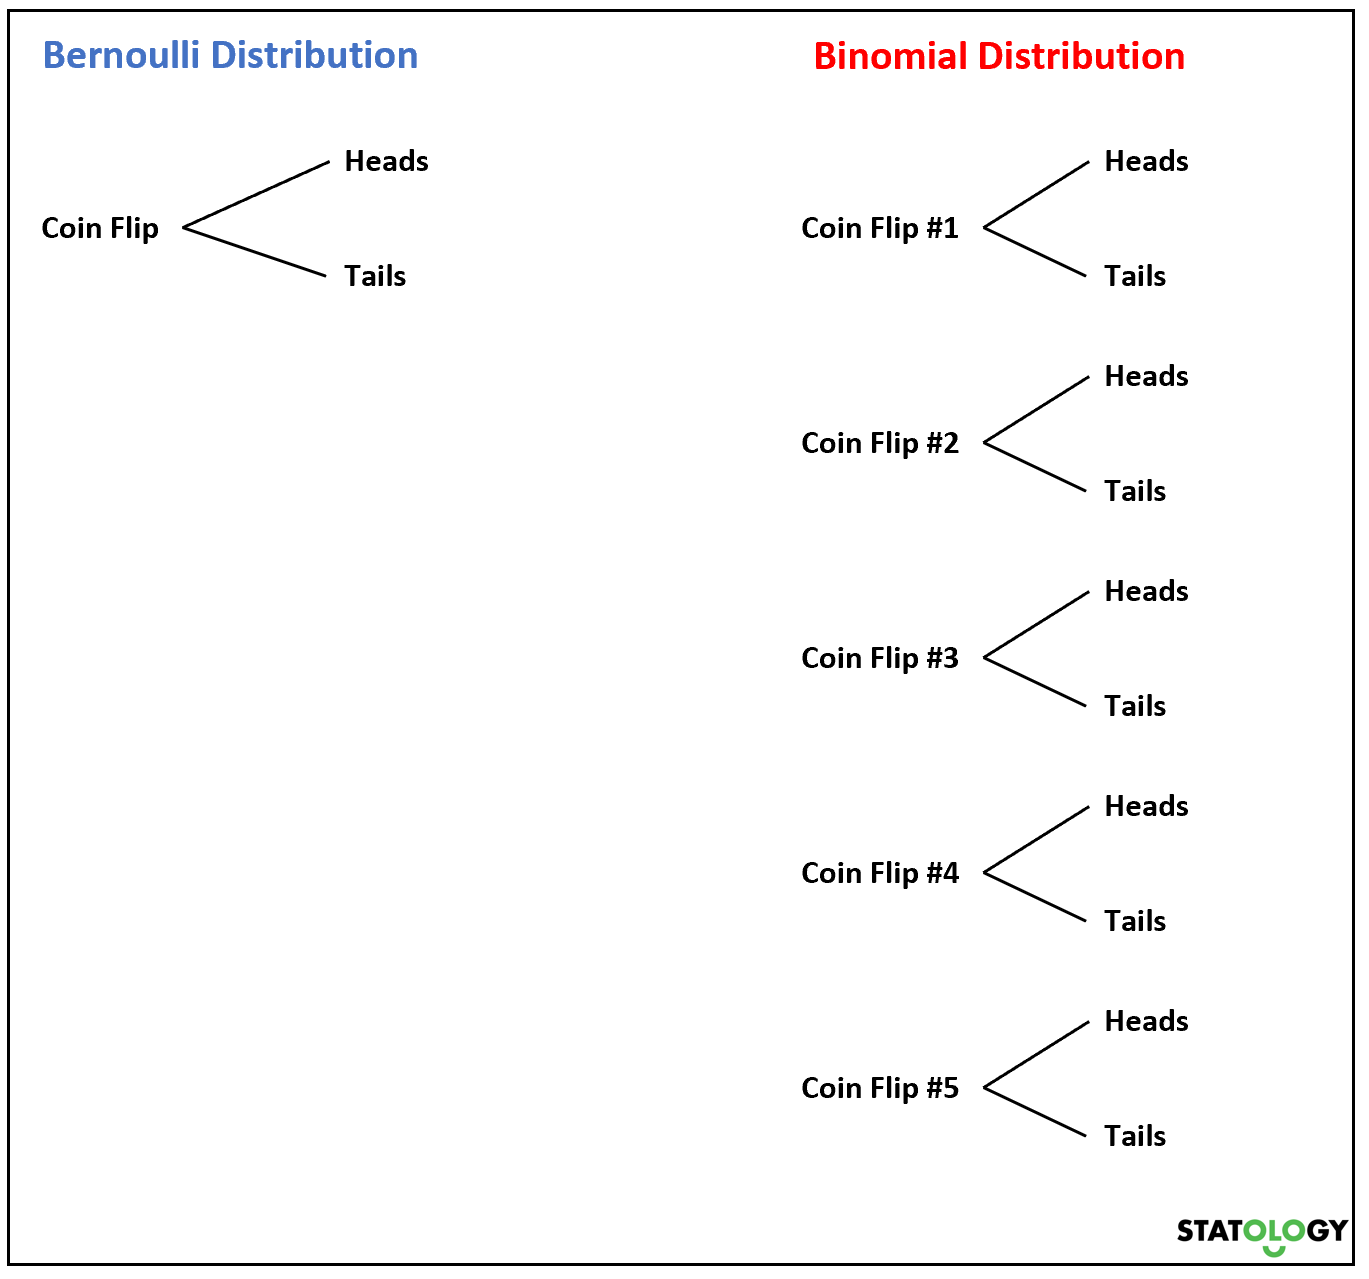 Bernoulli vs. Binomial